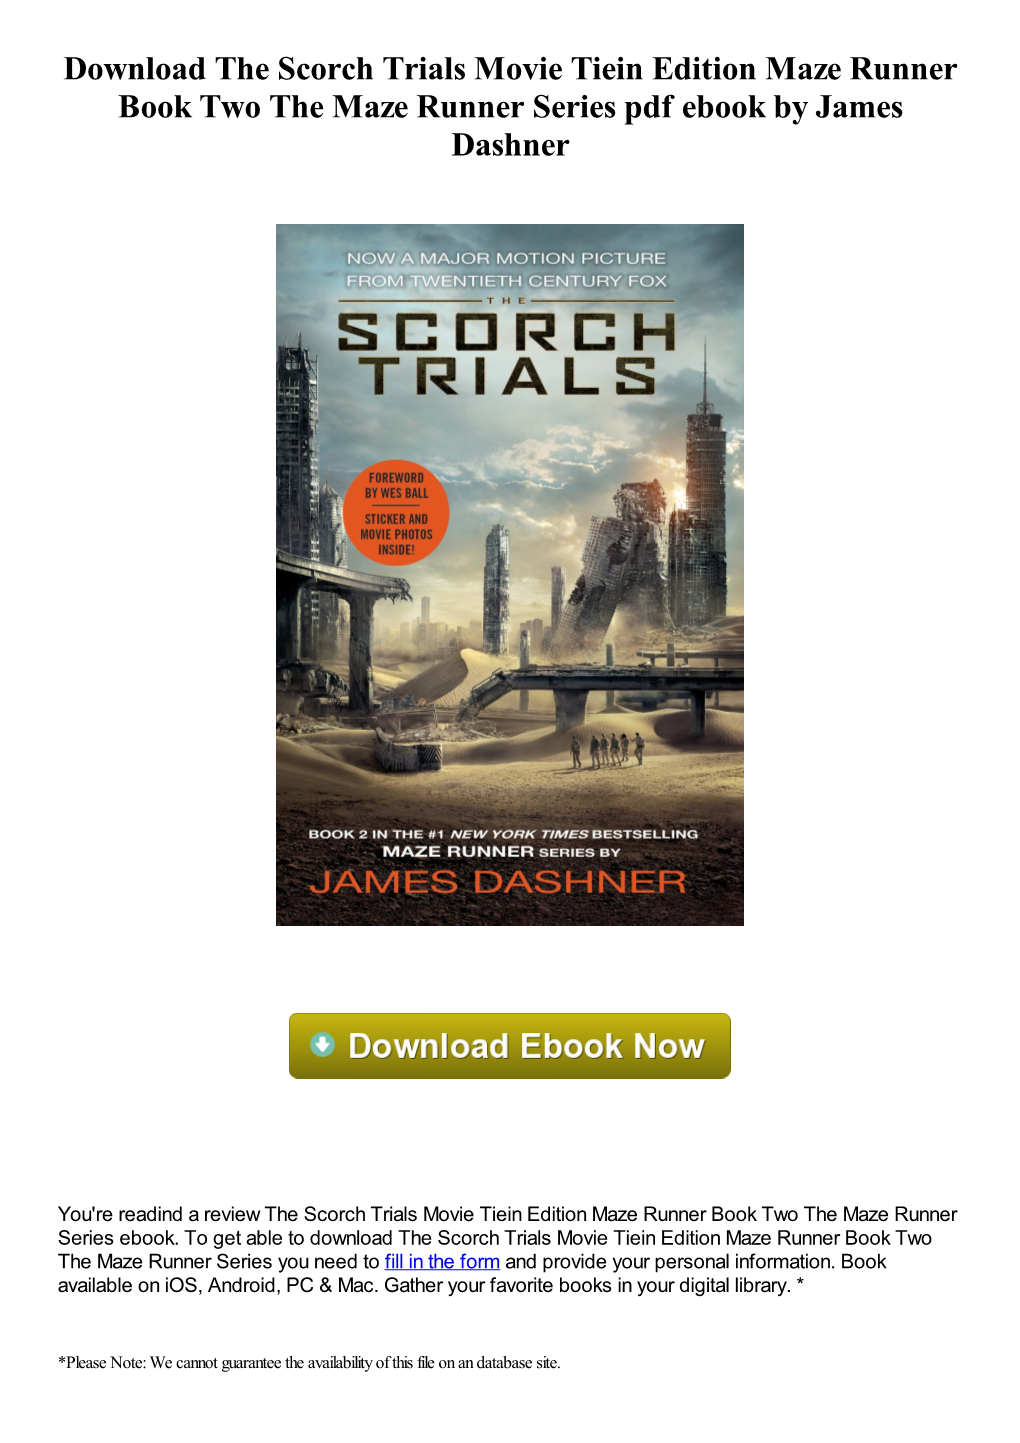 Download the Scorch Trials Movie Tiein Edition Maze Runner Book Two the Maze Runner Series Pdf Ebook by James Dashner